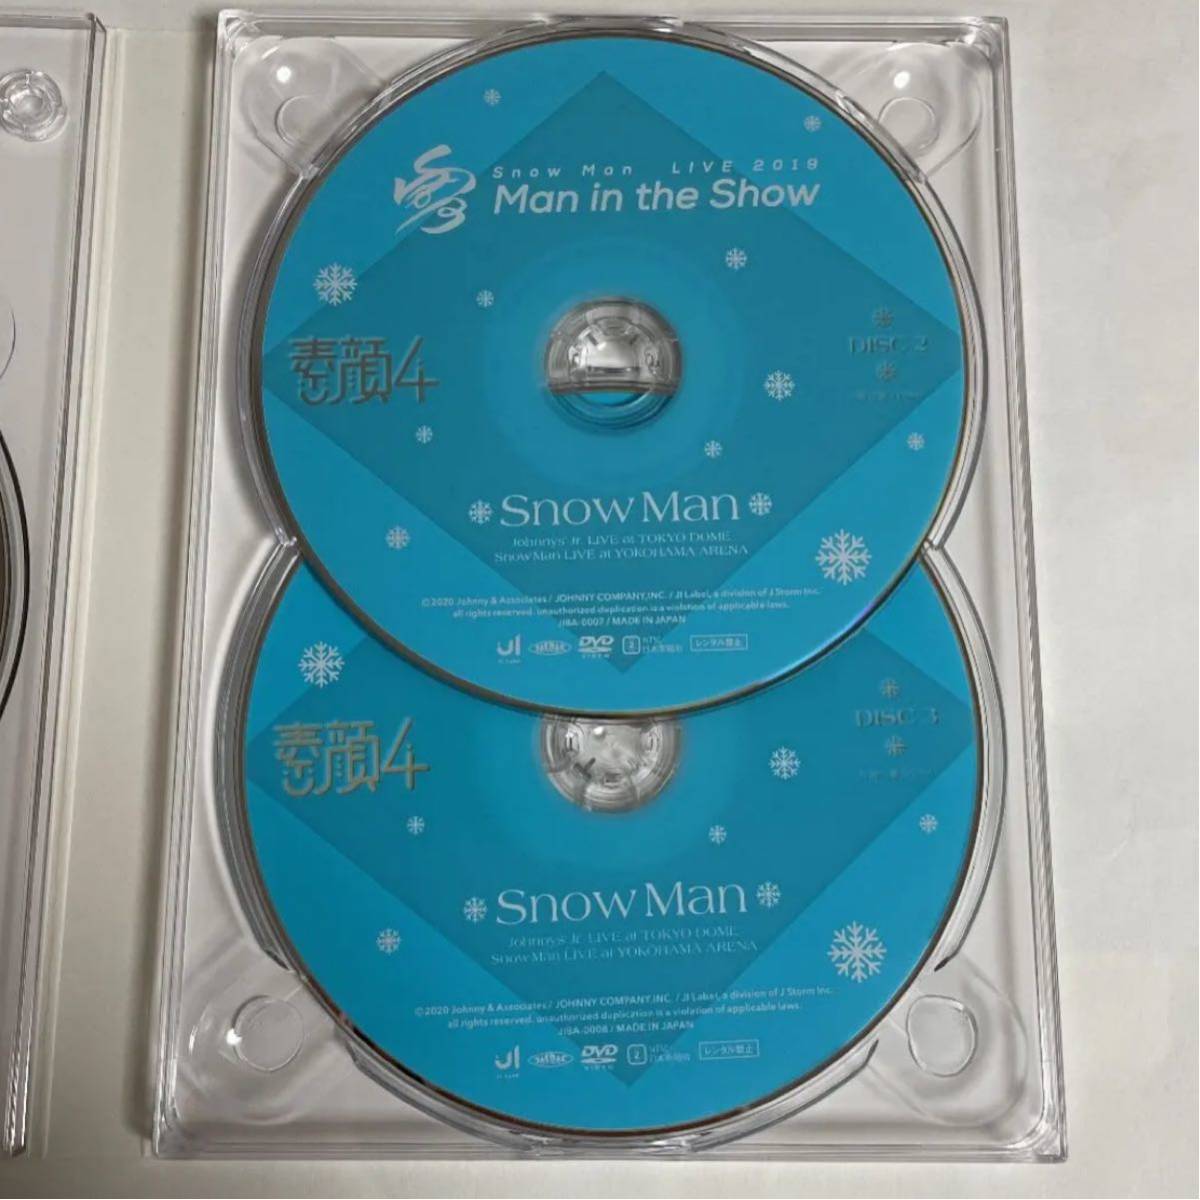 素顔4 SnowMan盤 DVD